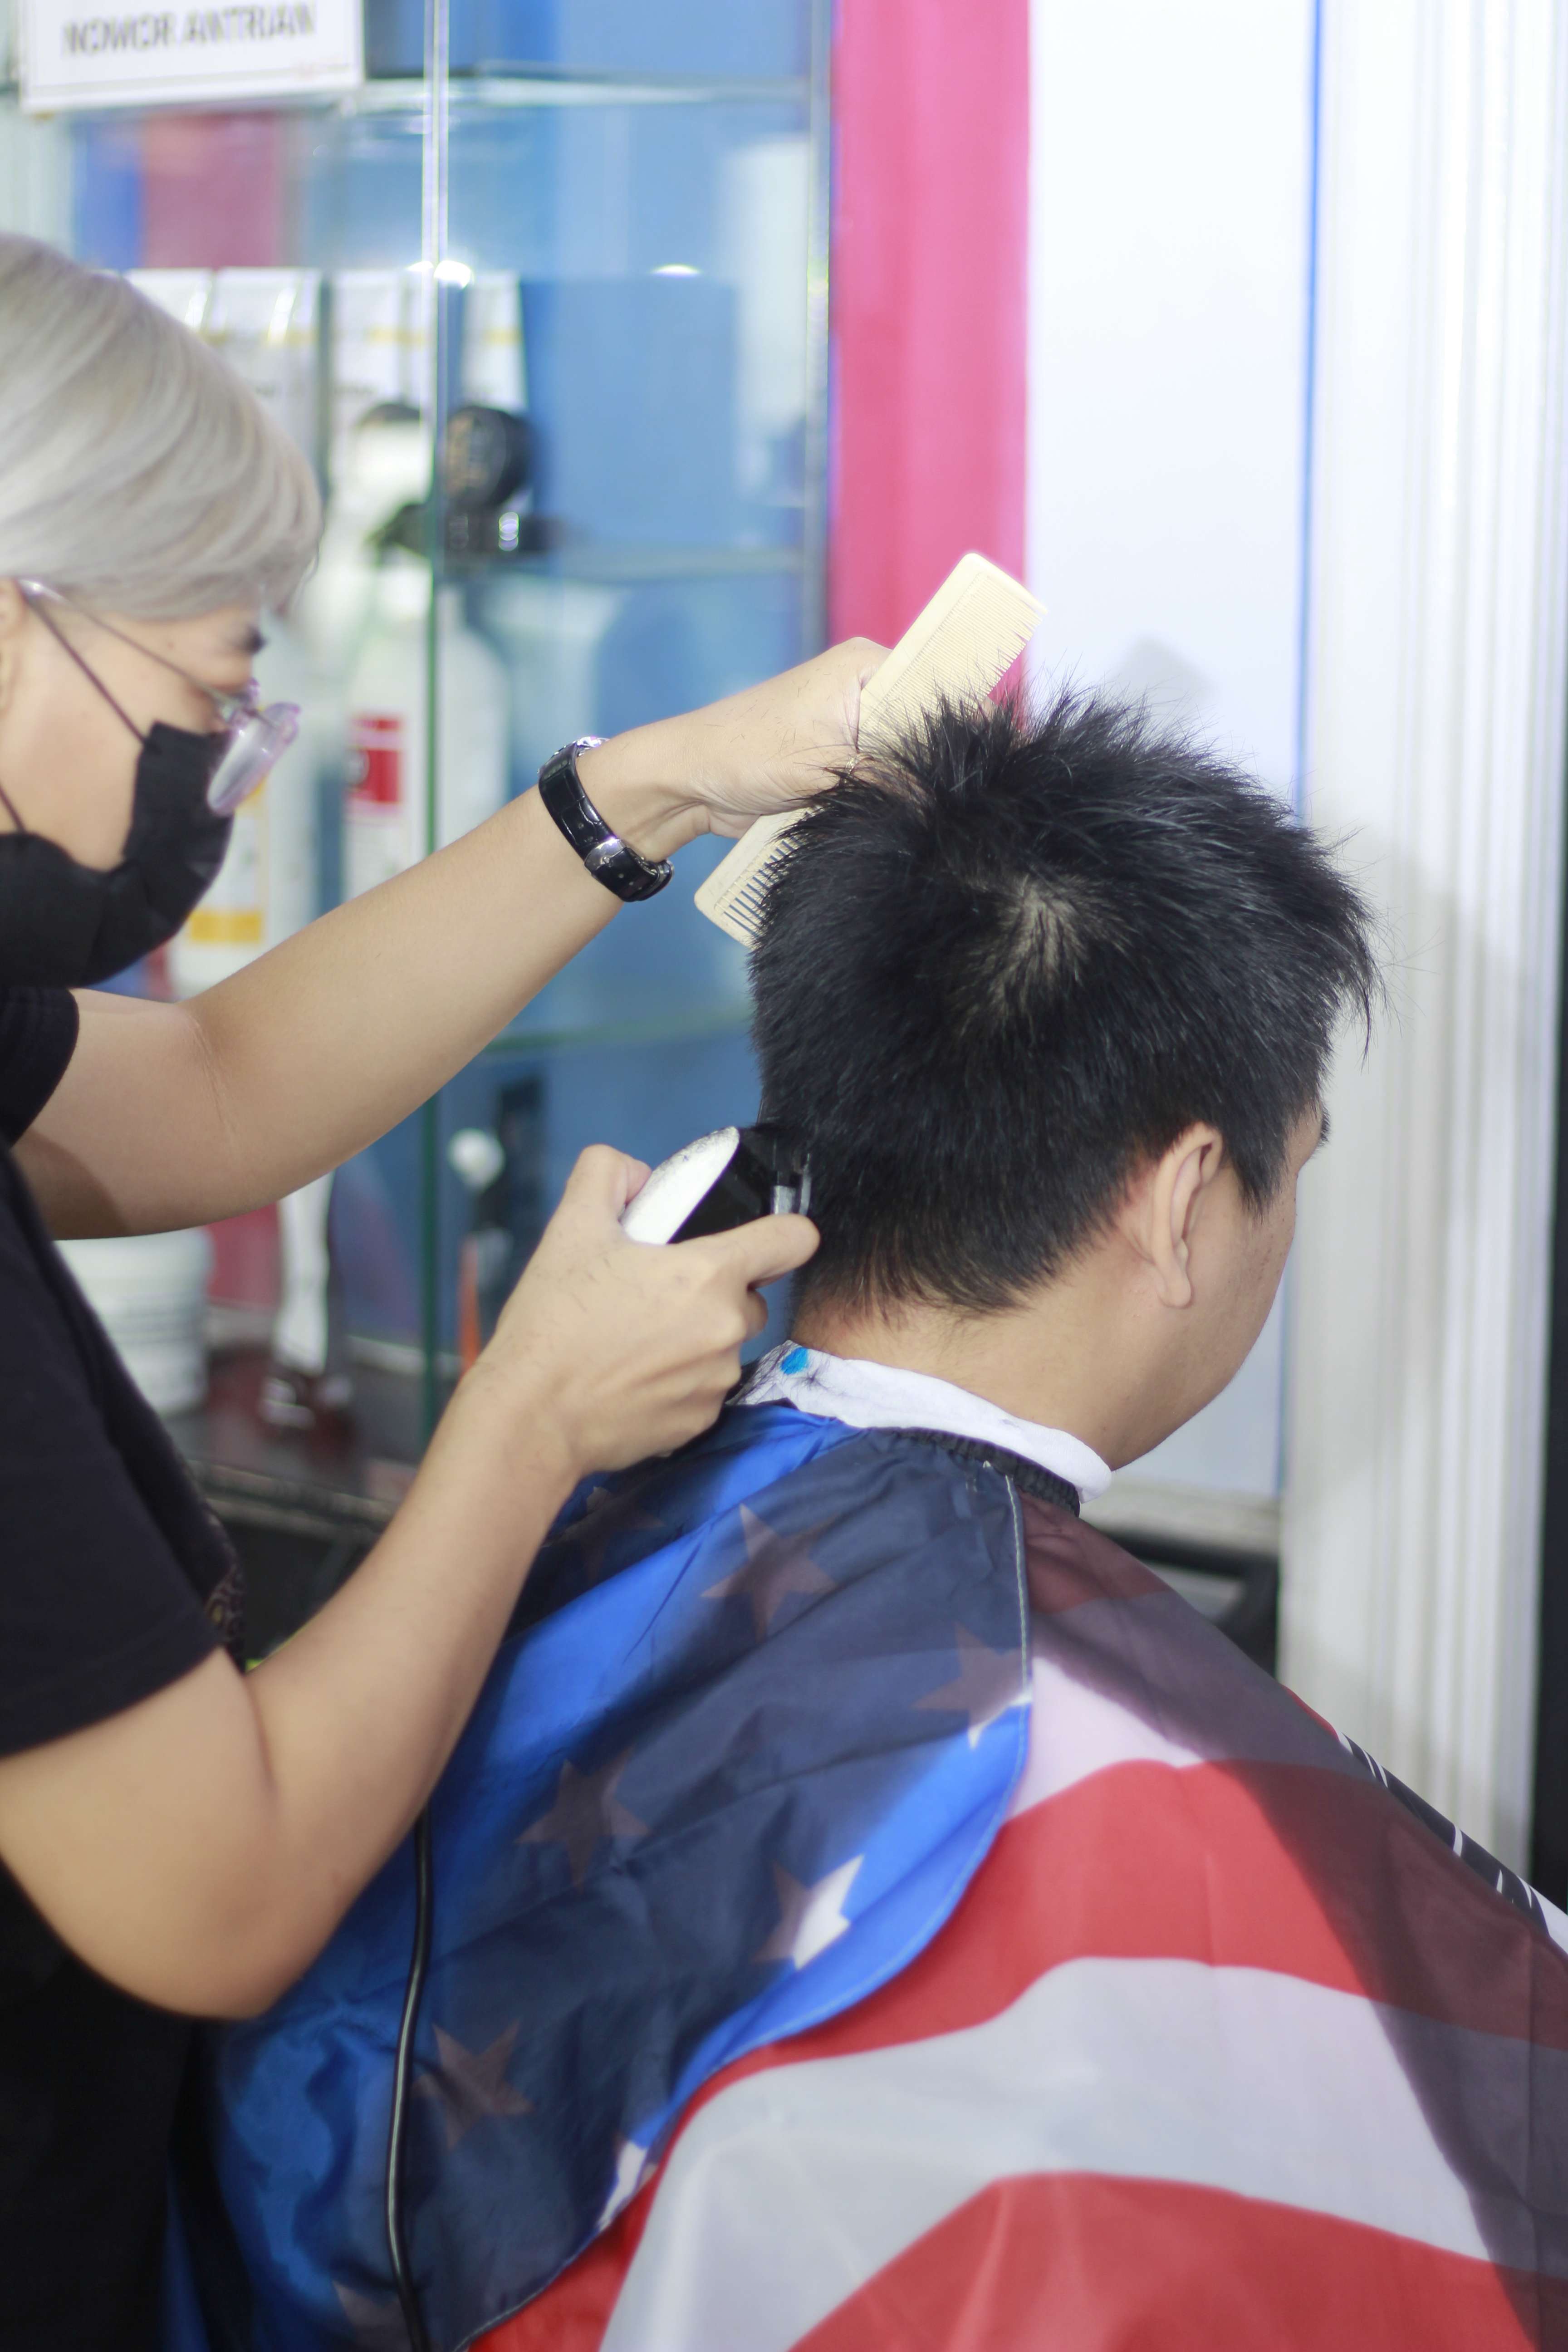 Harga Cukur Rambut Di Kecamatan Blimbing Profesional